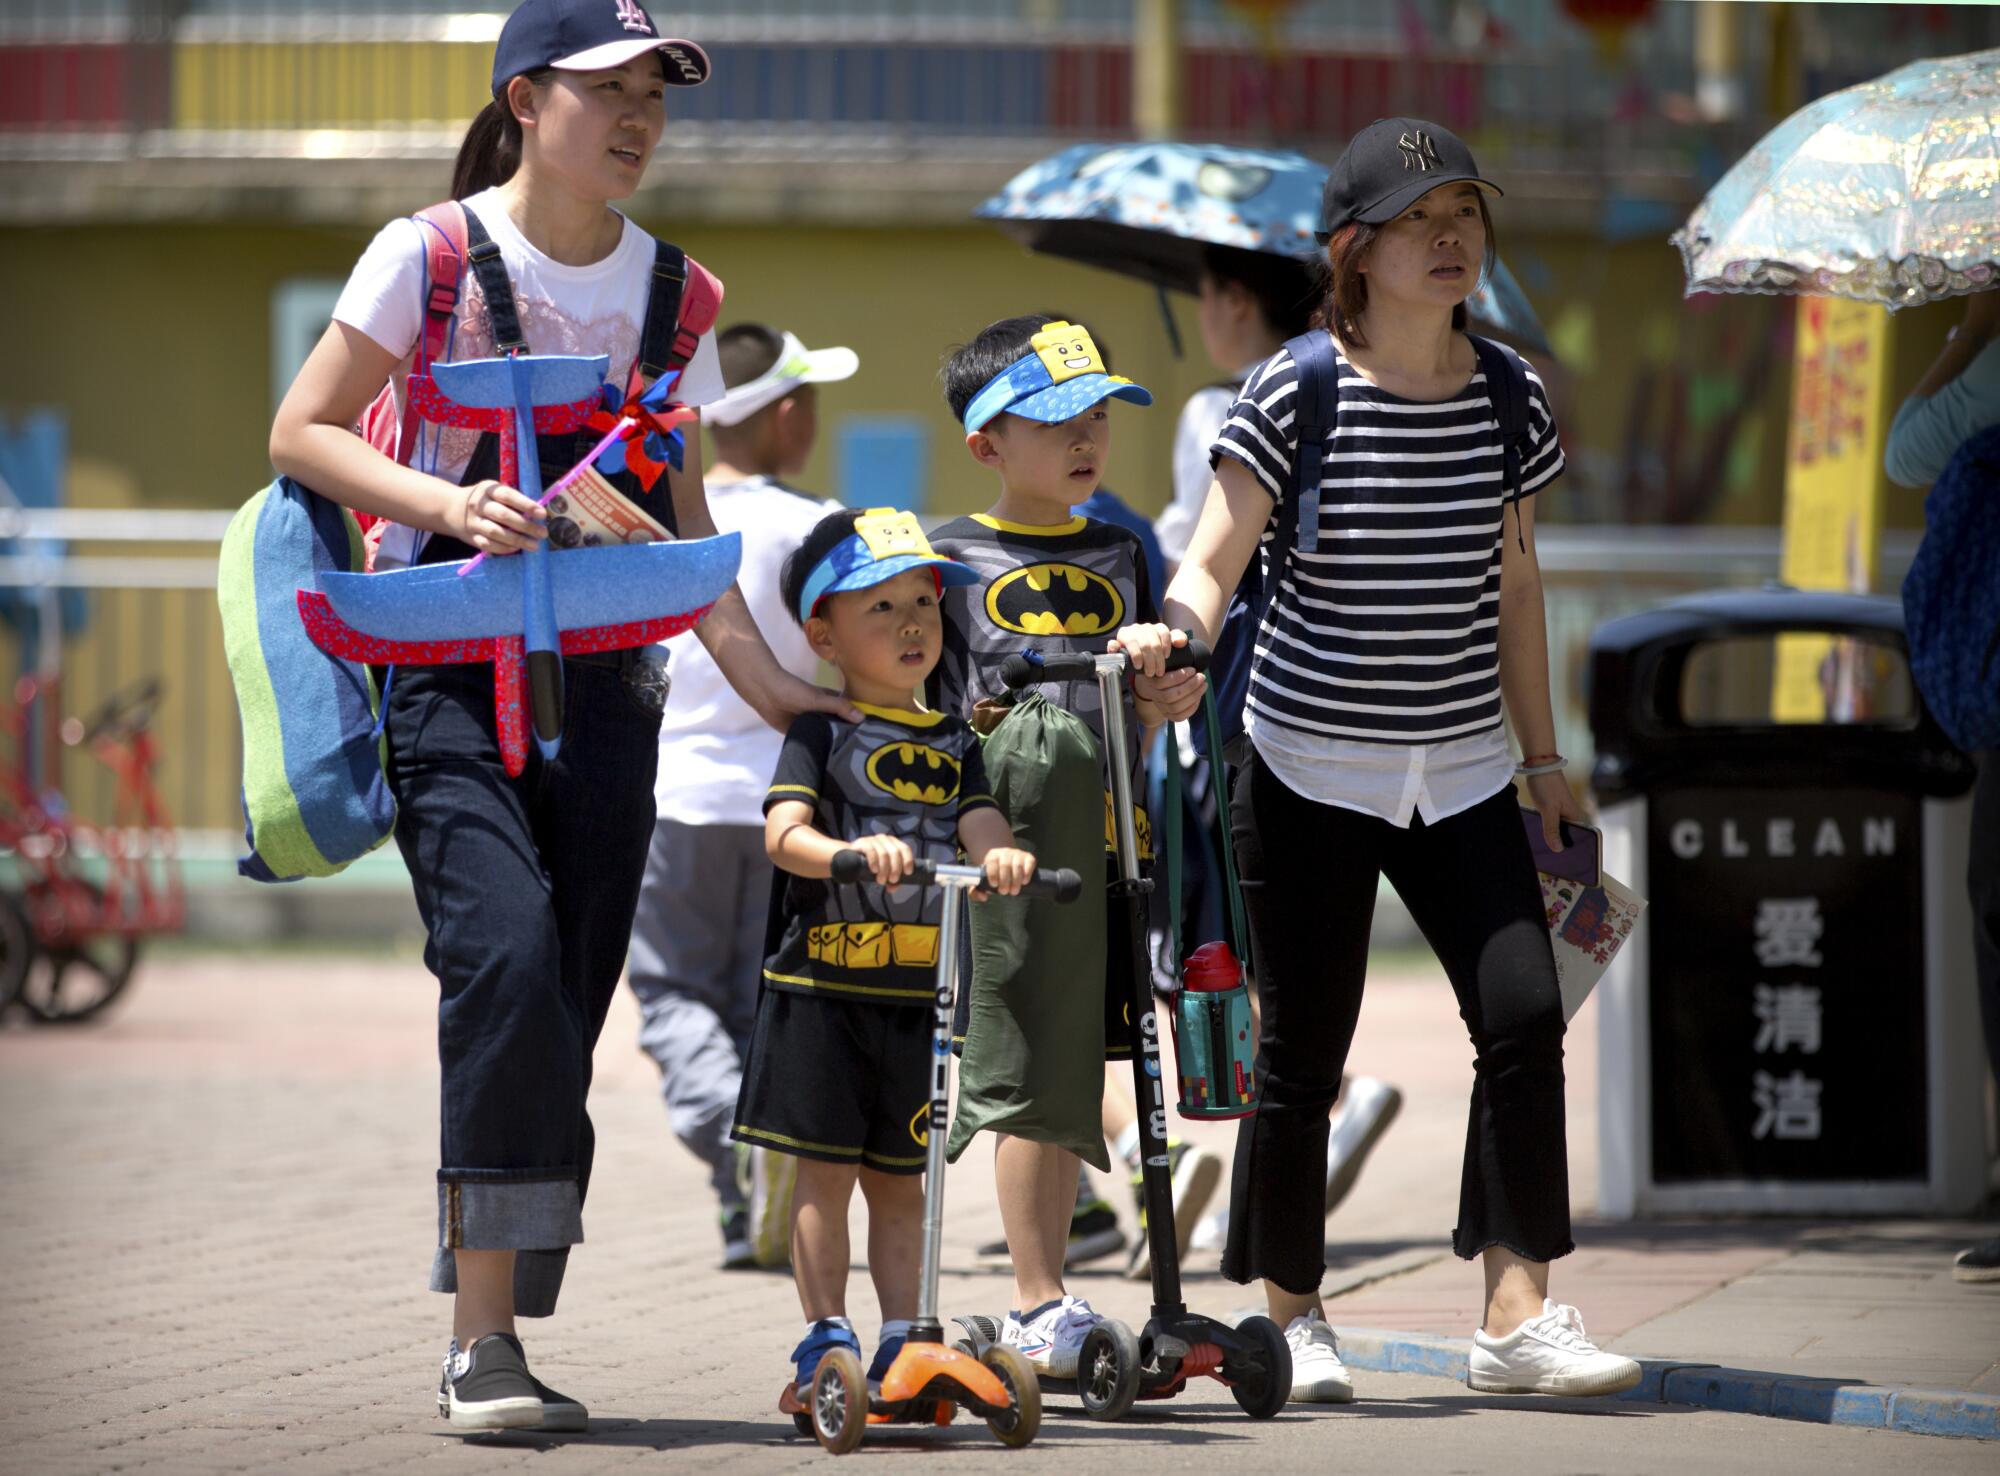 Dos mujeres, una de ellas cargando juguetes, caminan con niños vestidos con trajes a juego y en scooters en un parque público. 